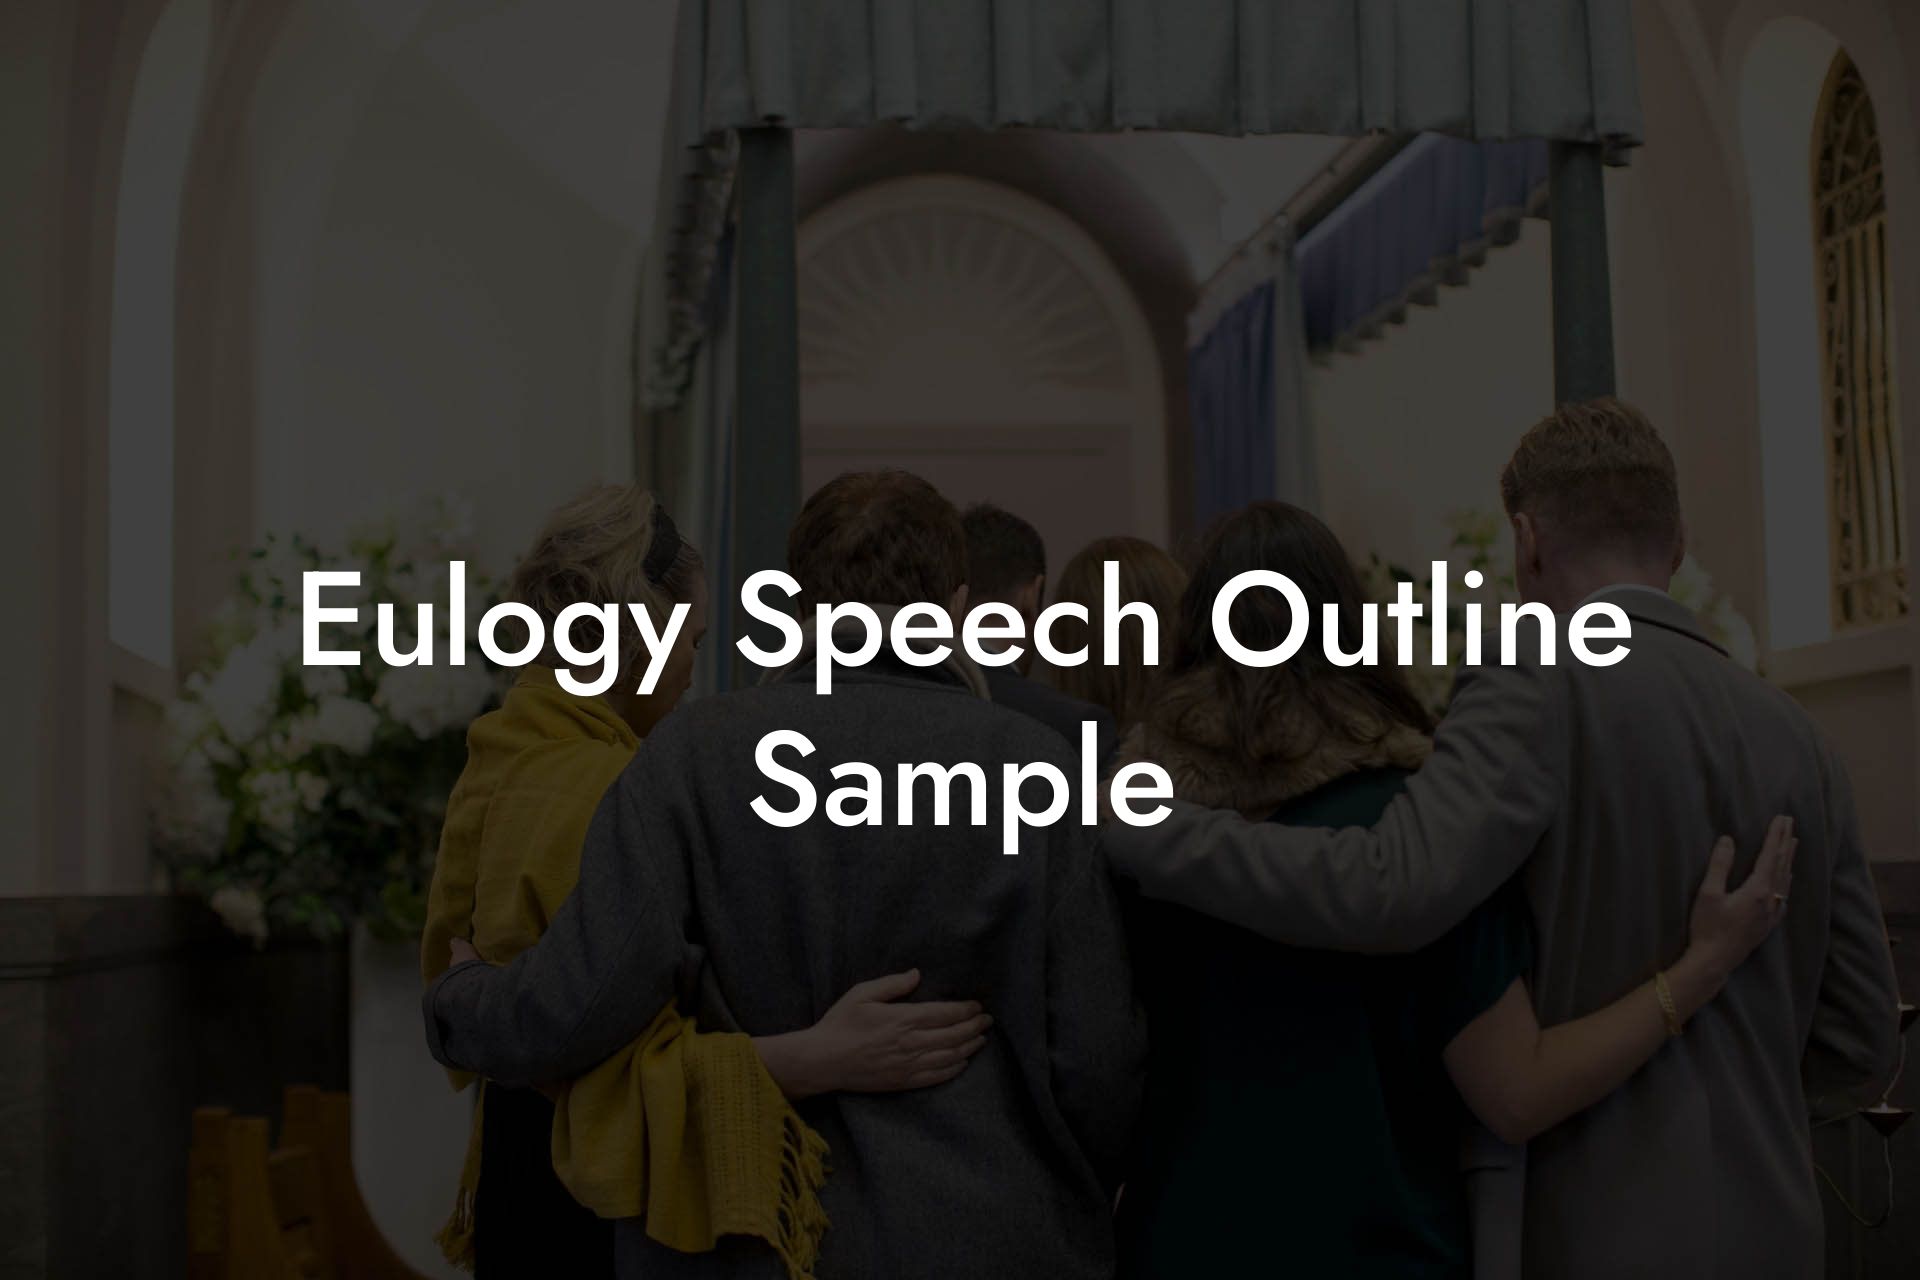 Eulogy Speech Outline Sample